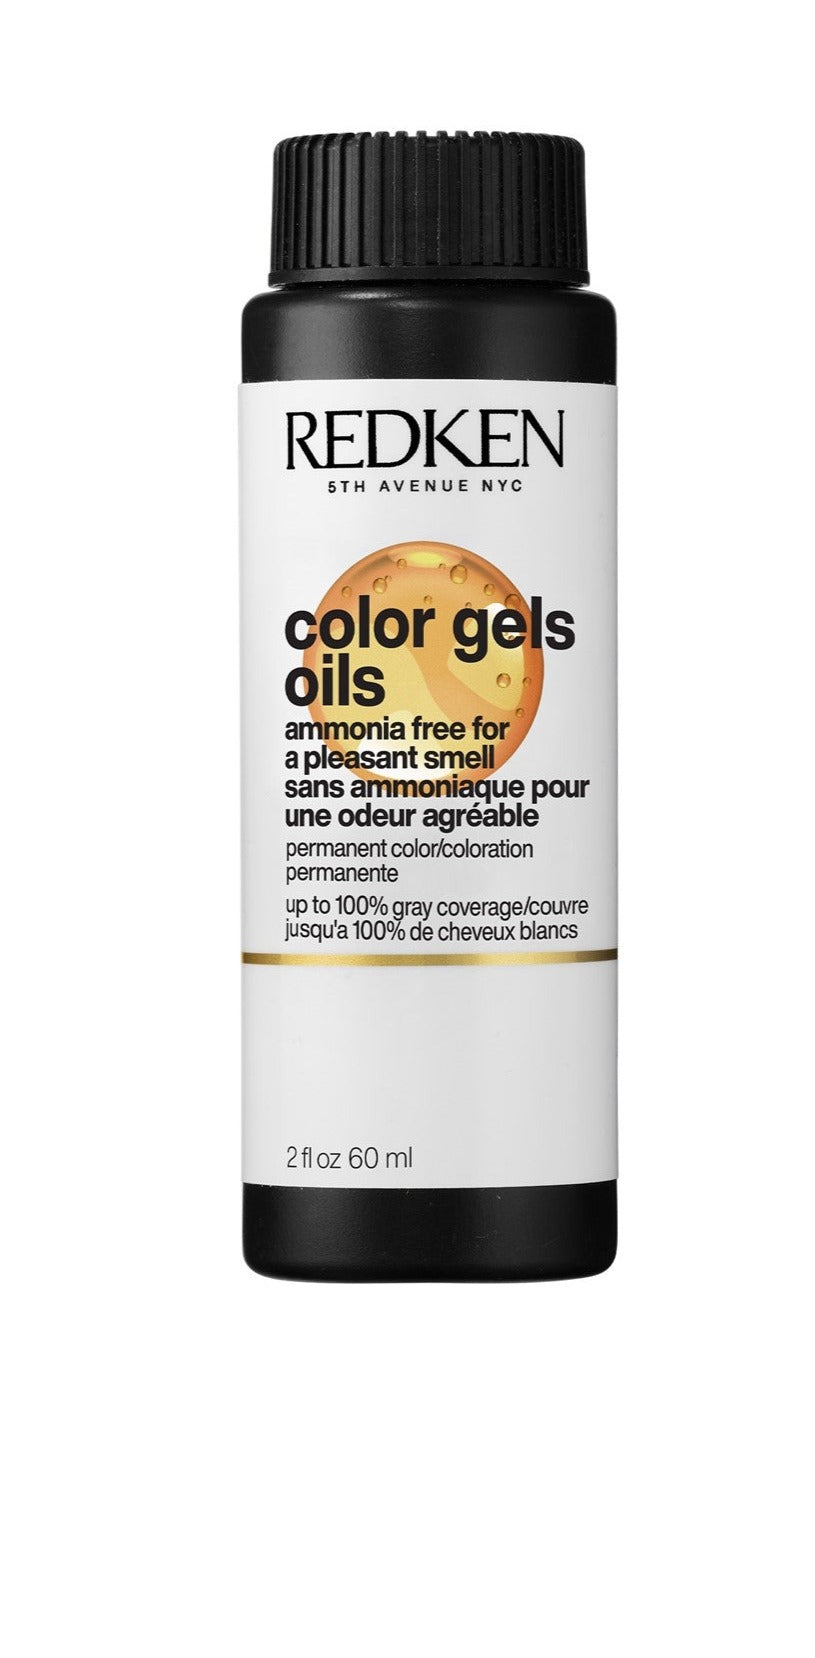 Redken Professional  Color Gels Oils  Permanent Color - Salon Warehouse